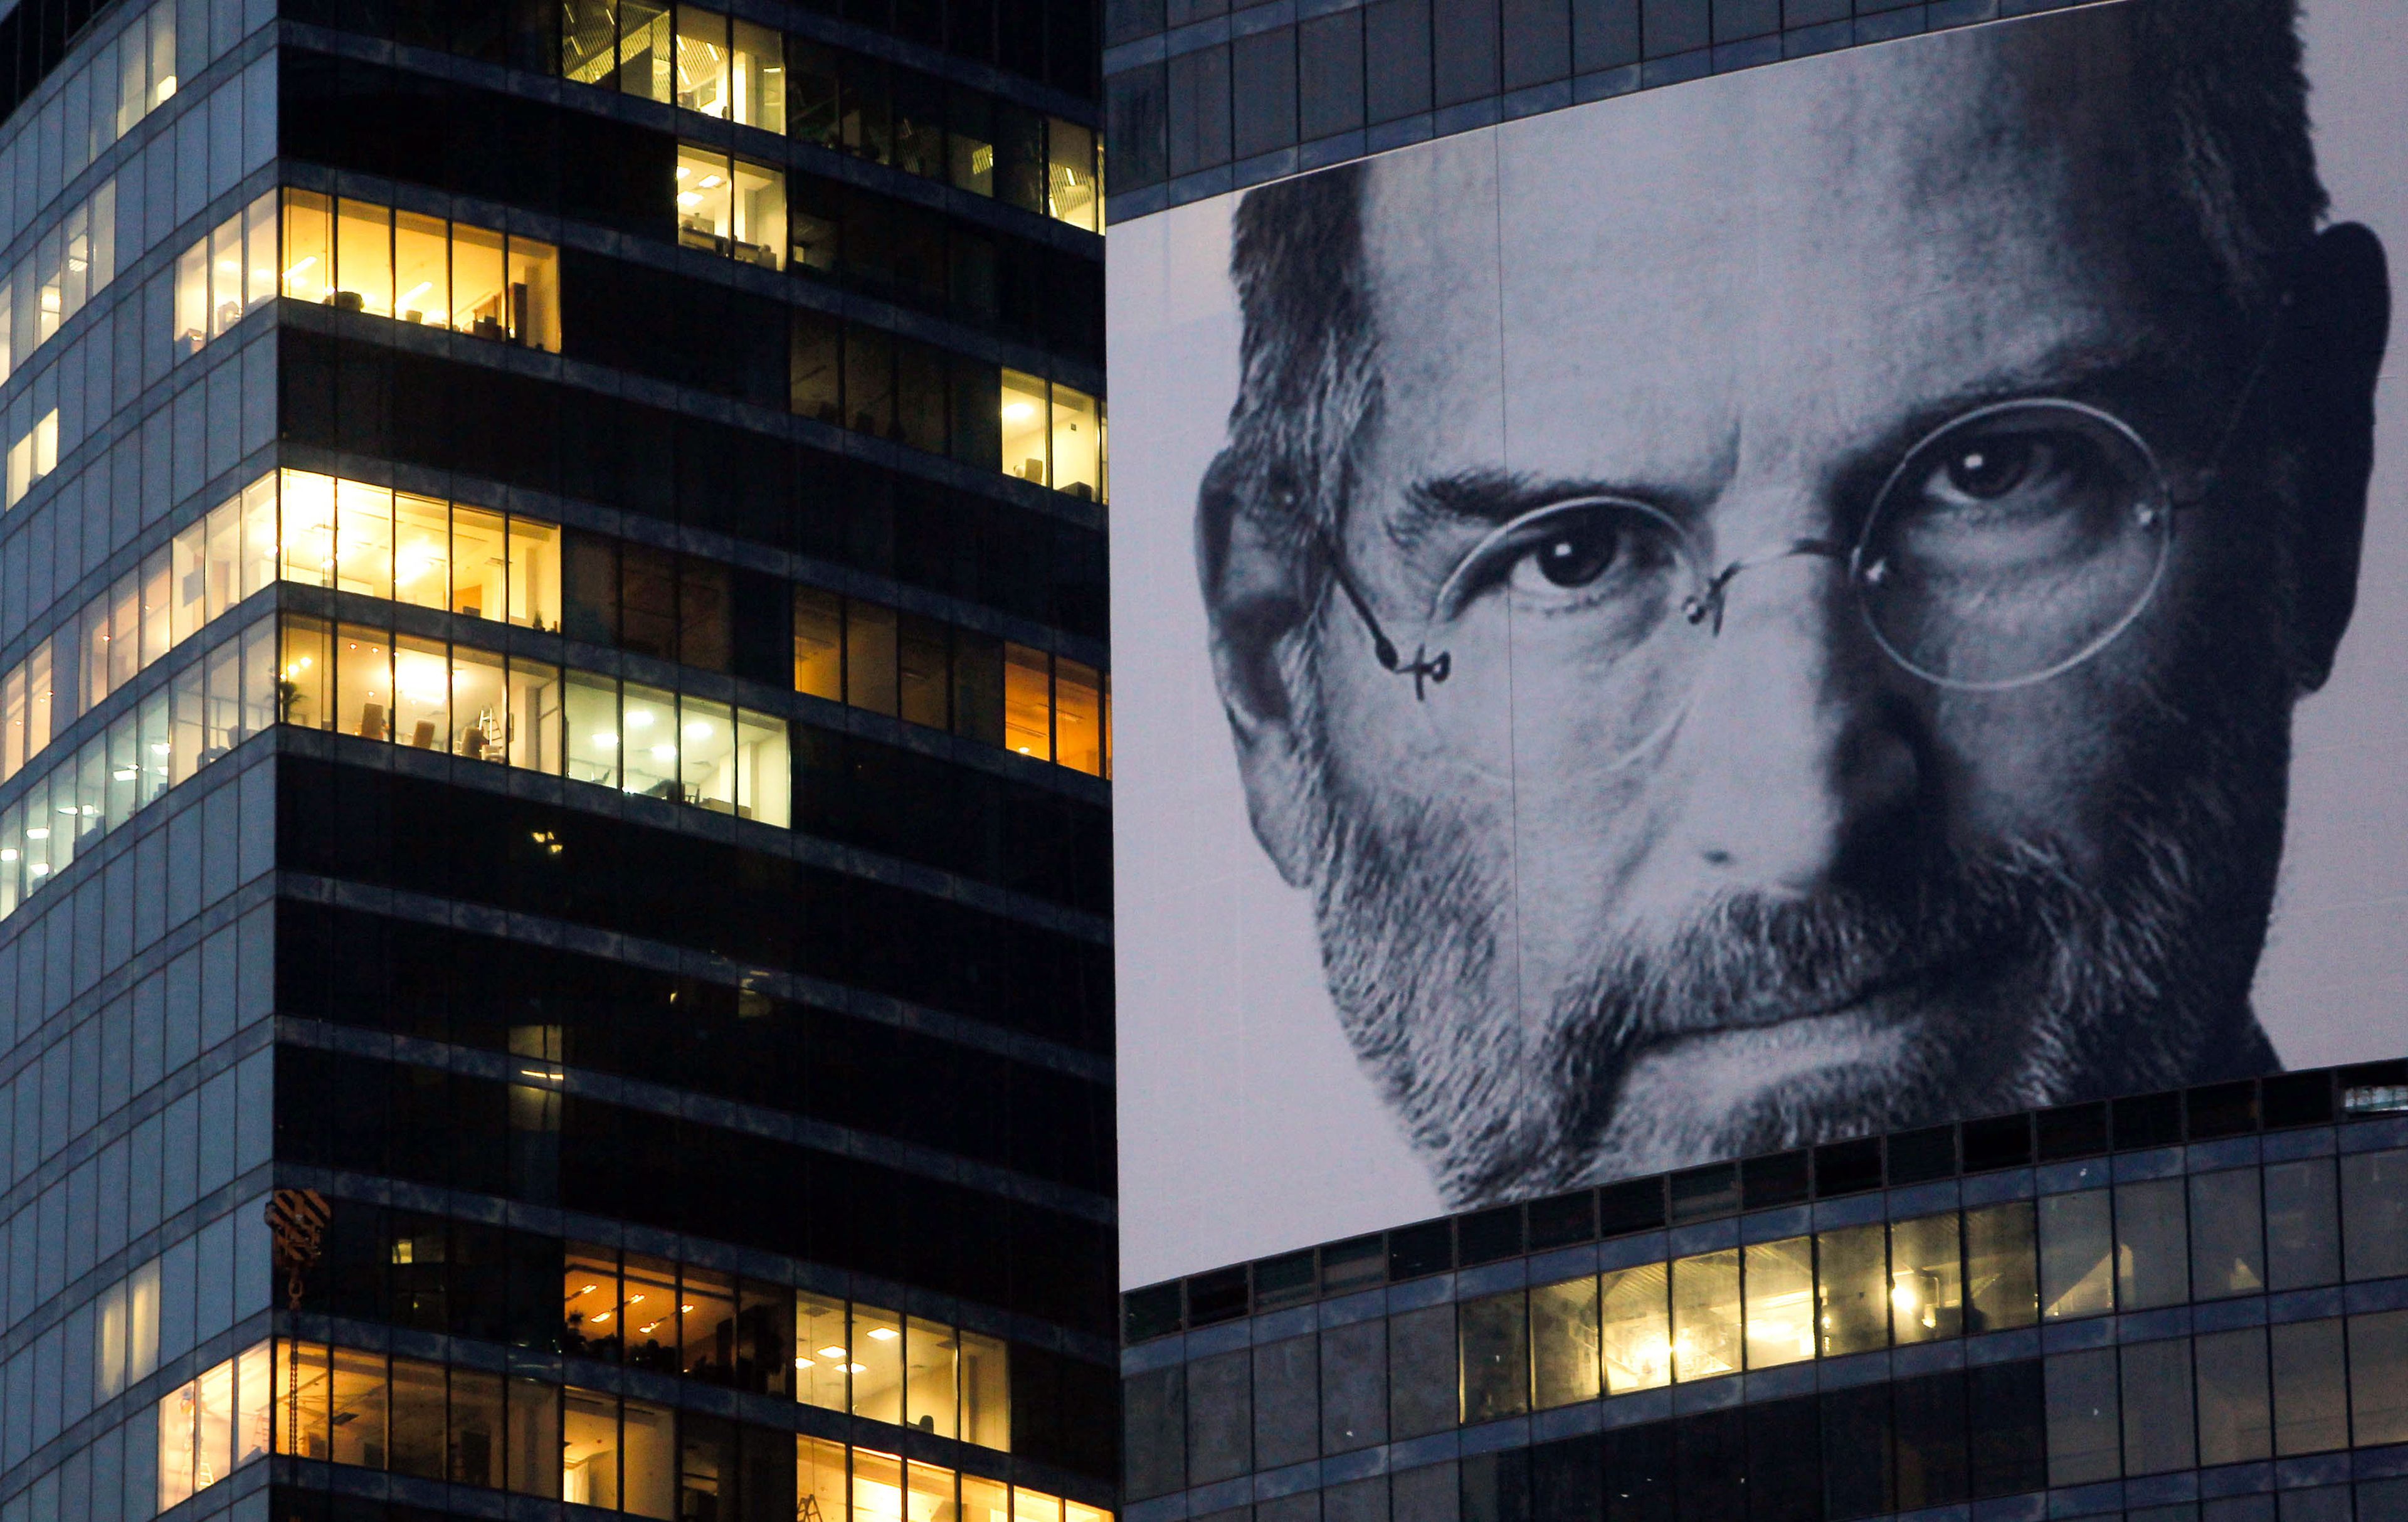 El legado de Steve Jobs perdura 10 años después de su adiós: productos, innovaciones e inspiración con los que revolucionó la industria e influyó sobre millones de personas